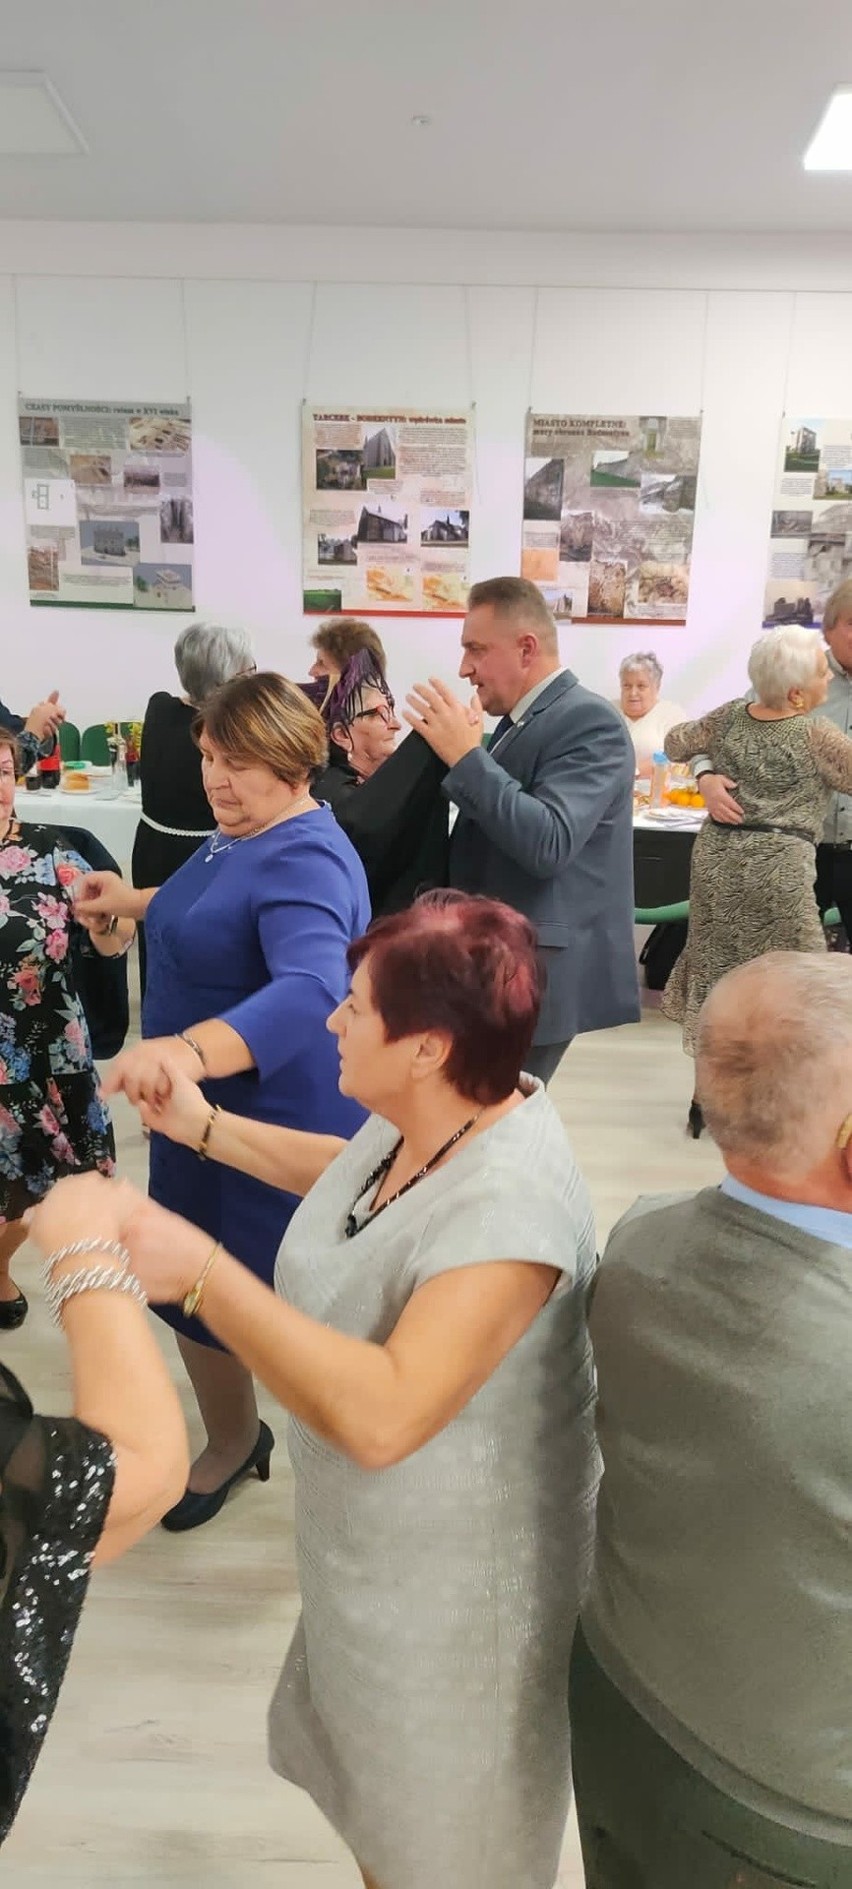 Tak bawili się mieszkańcy gminy Bodzentyn na imprezach andrzejkowych. Radosna zabawa i tańce. Zobaczcie zdjęcia